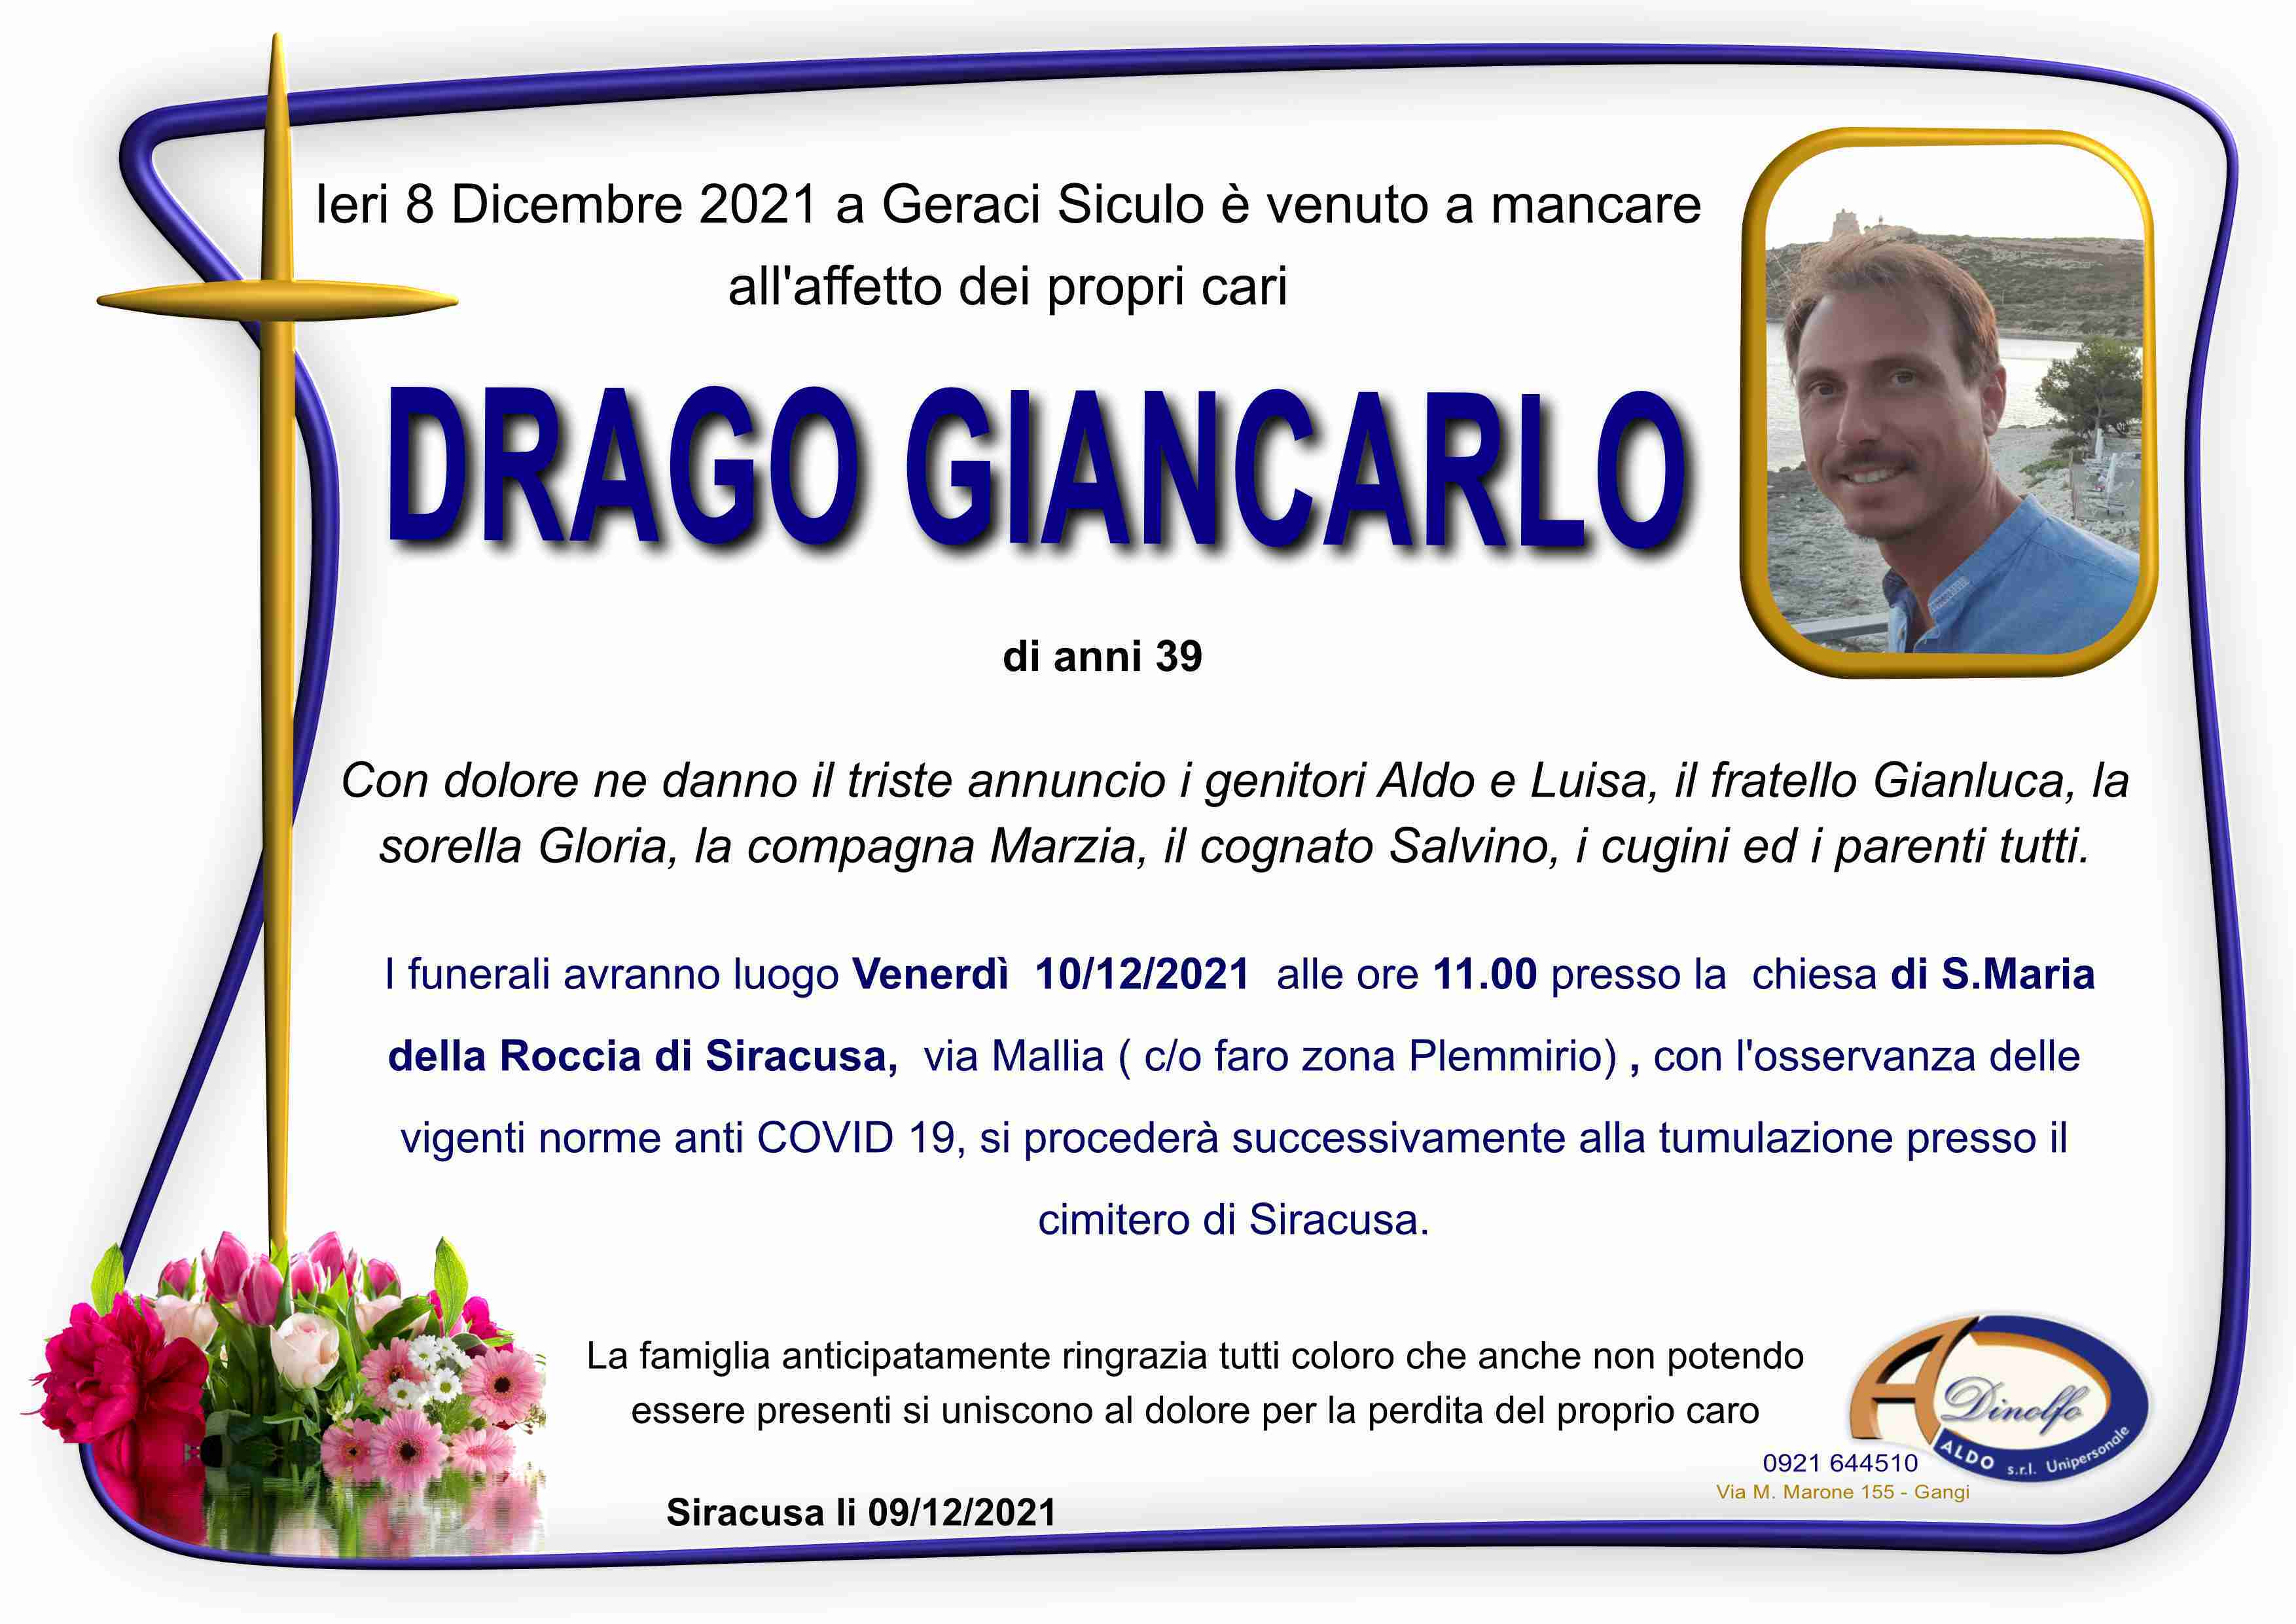 Giancarlo Drago